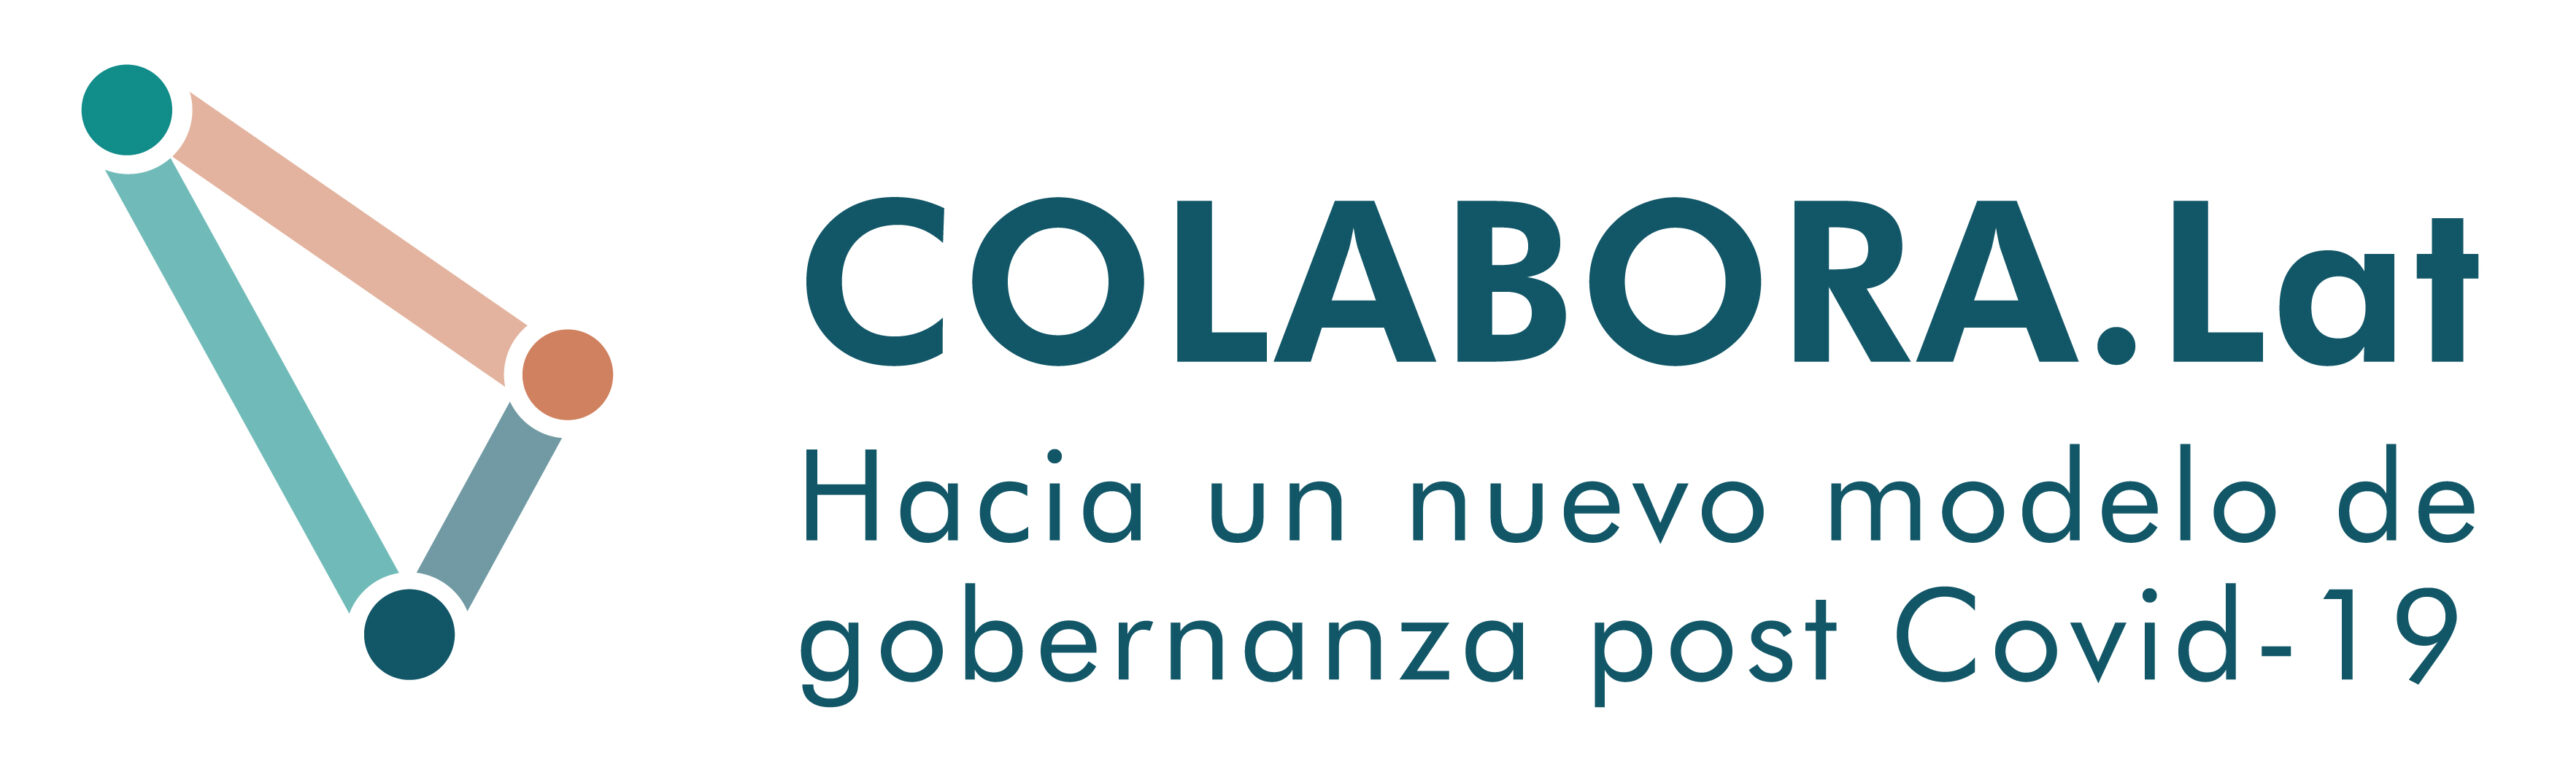 COLABORALAT_LOGO_COLOR (1)